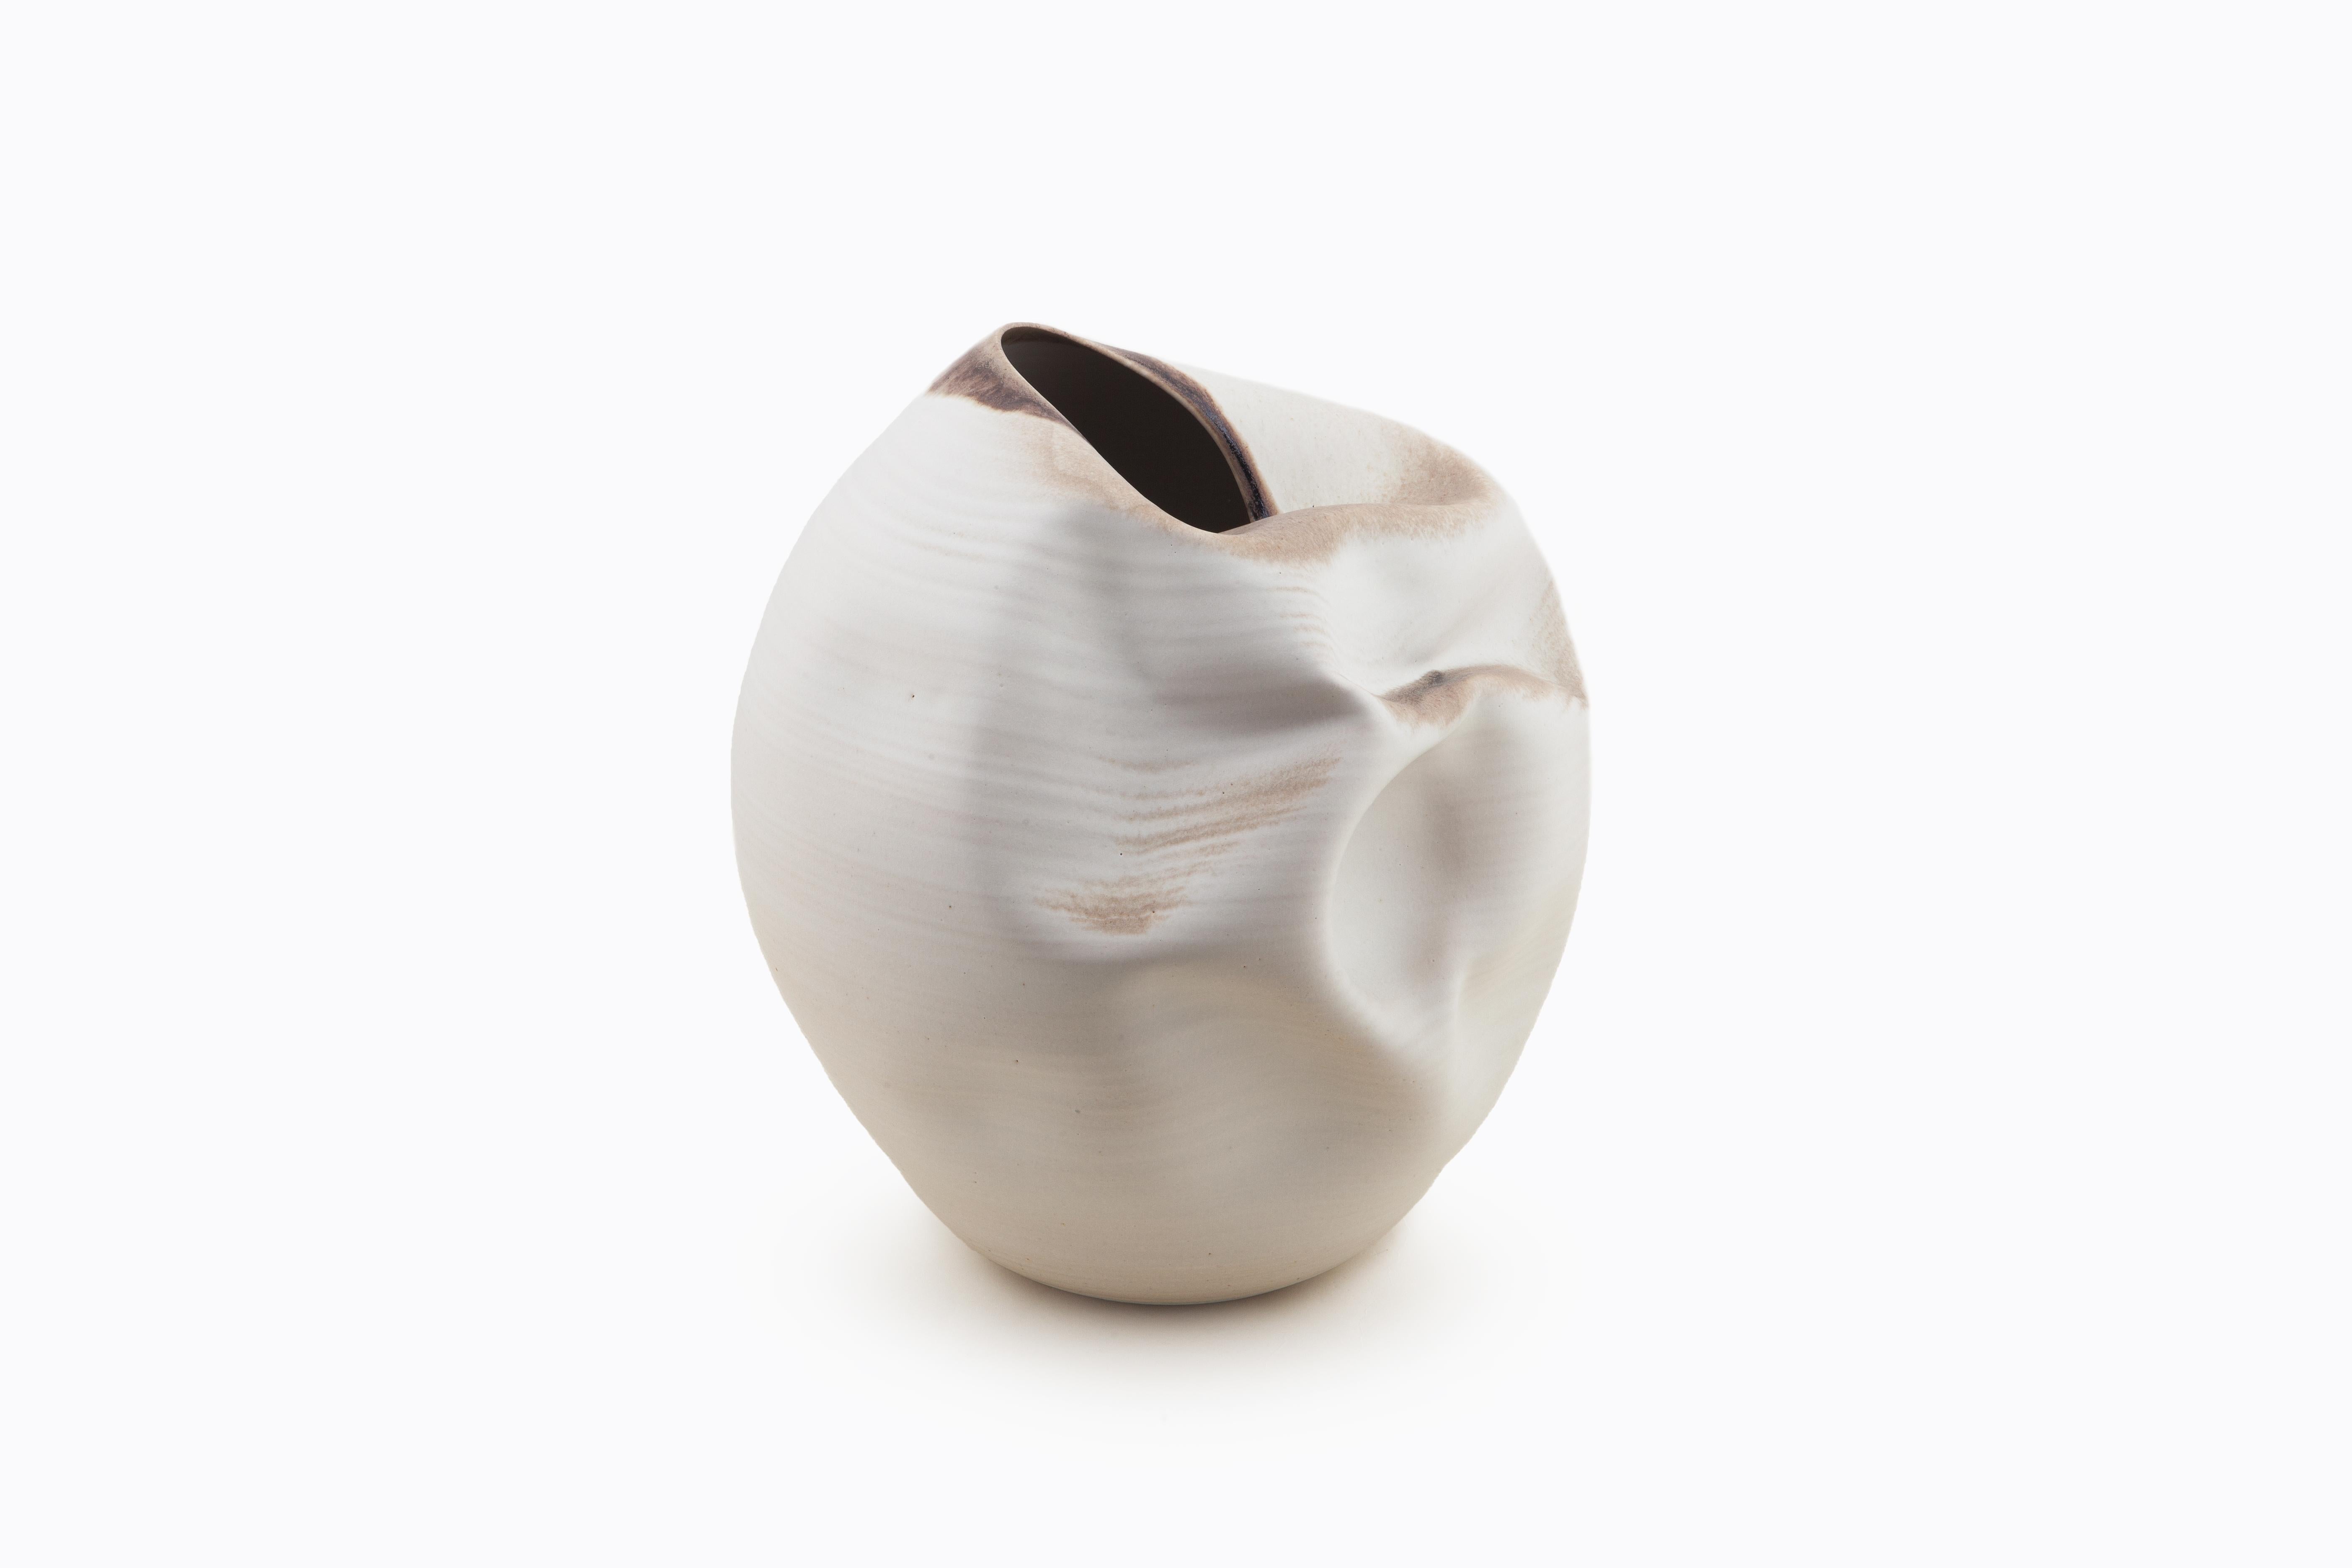 Glazed White Indented Form, Vase, Interior Sculpture or Vessel, Objet D'Art